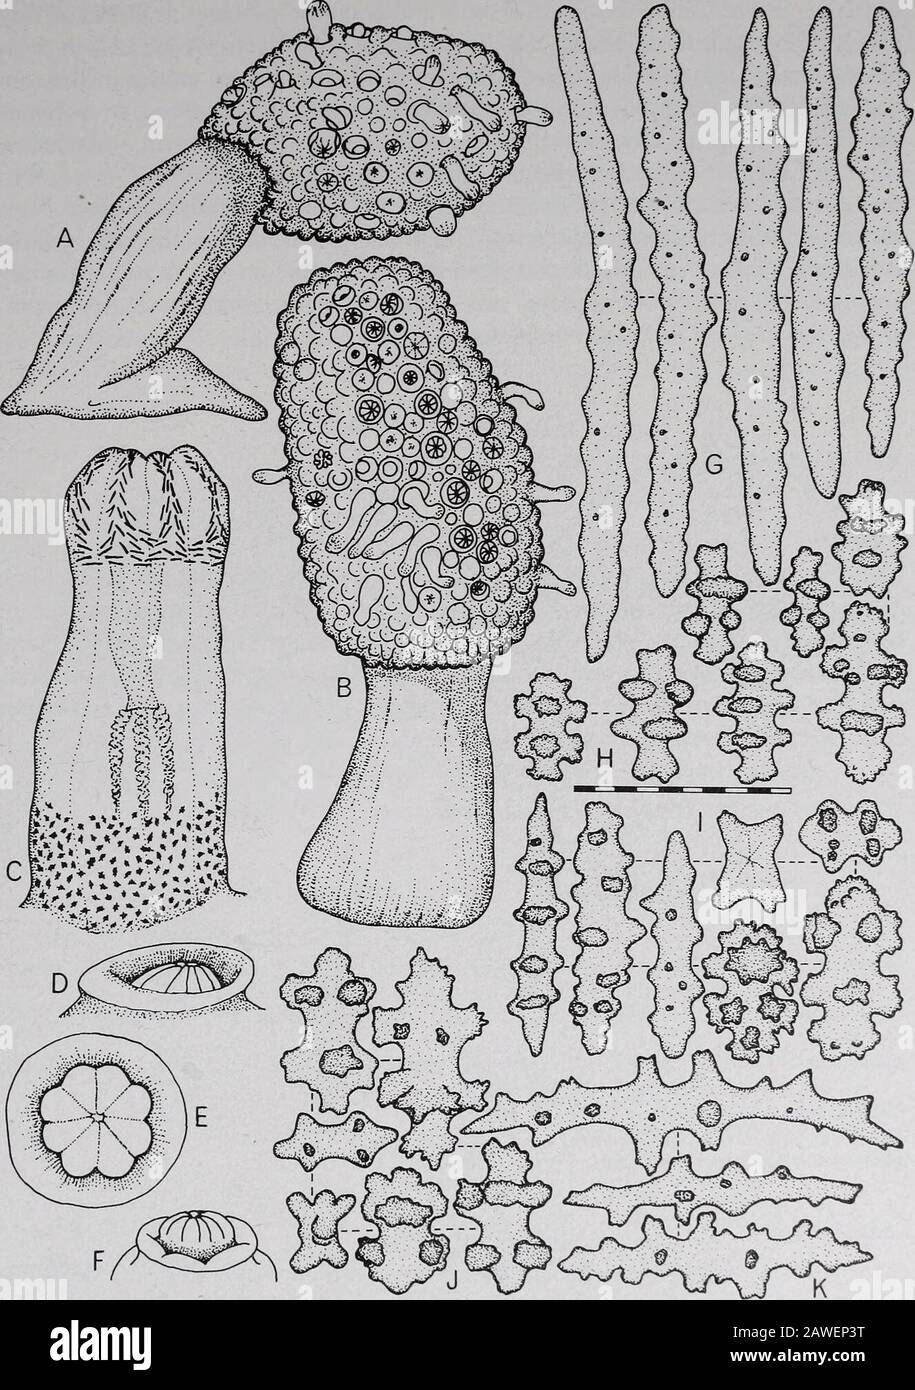 Annali del Sud Africa MuseumAnnale van die Suid-Afrikaanse Museum . e-like, simile a creste o creste. Polipi dimorfici. Scleritesof capitulum sono mandrini tubercolati, solitamente a forma di club con teste mal definite. Gli scleriti del fusto sono generalmente di lunghezza pari a &lt;0,3 mm. Circa 47 specie provenienti dall'Indo-Pacific, di solito in acque calde poco profonde, e spesso associate con barriere coralline. Vedere Verseveldt (1983) per una revisione dettagliata del genere, con una chiave e una descrizione per le specie riconosciute. Tipo di specie. Lobophitum crassum von Marenzeller, 1886; Indo-Pacific. Commento Tix Foto Stock